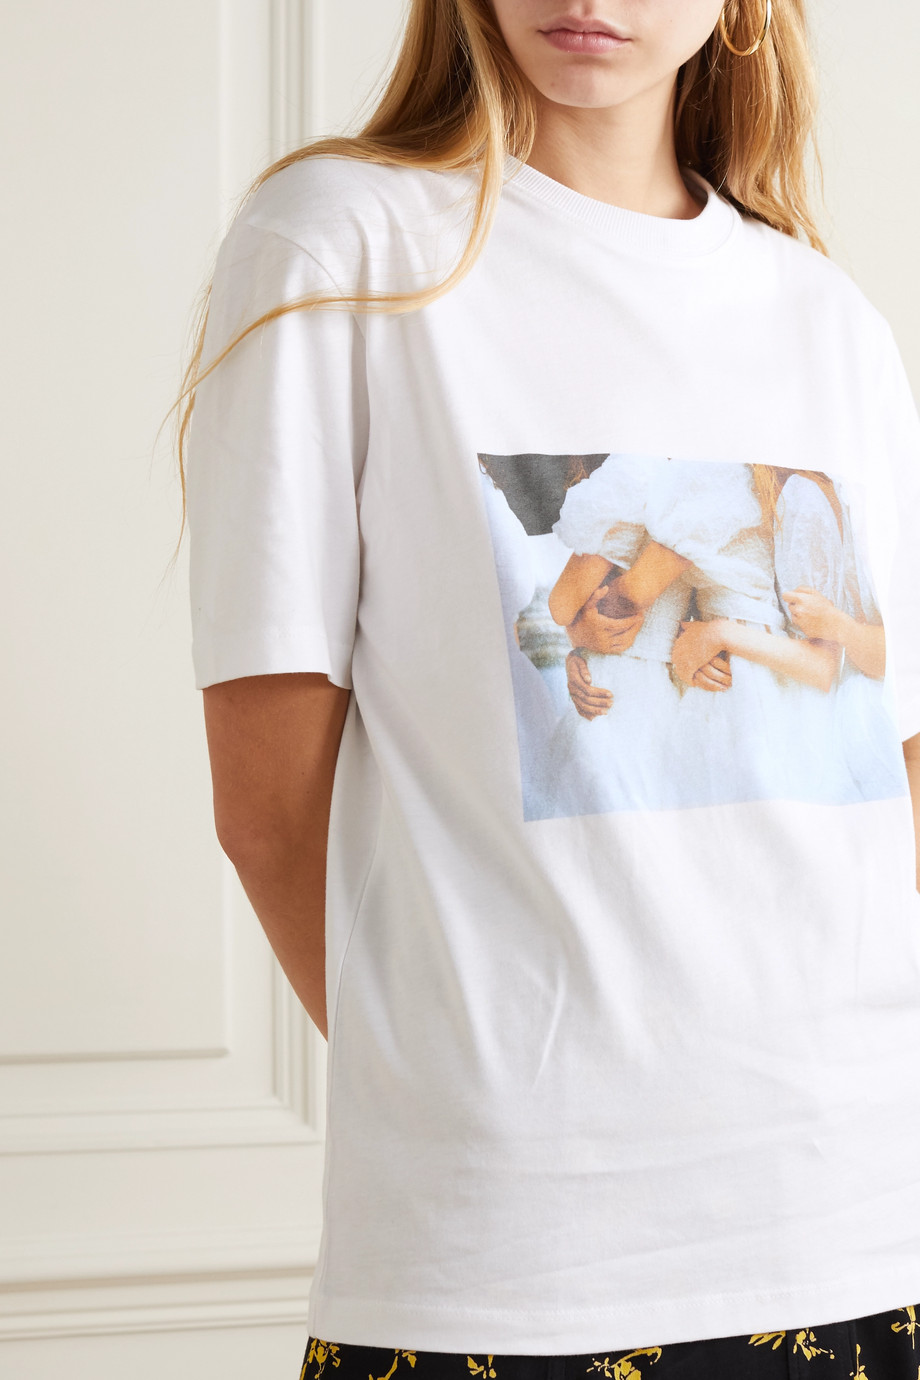 Net-a-Porter x Cecilie Bahnsen International Women's Day T-shirt 2020.